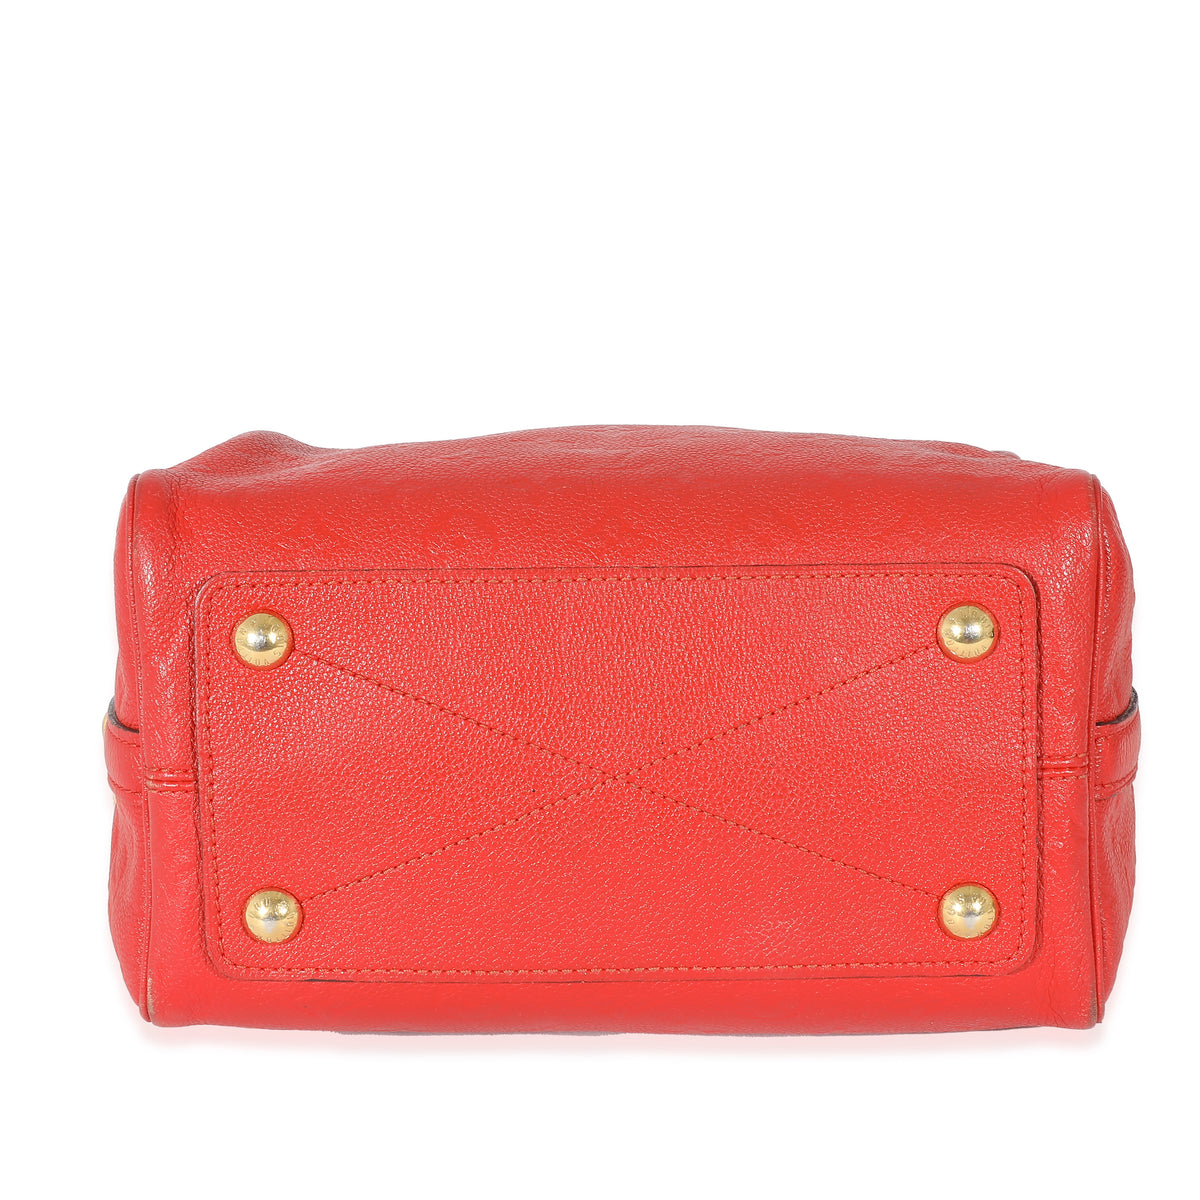 Louis Vuitton Red Epi Leather Speedy 25, myGemma, CA